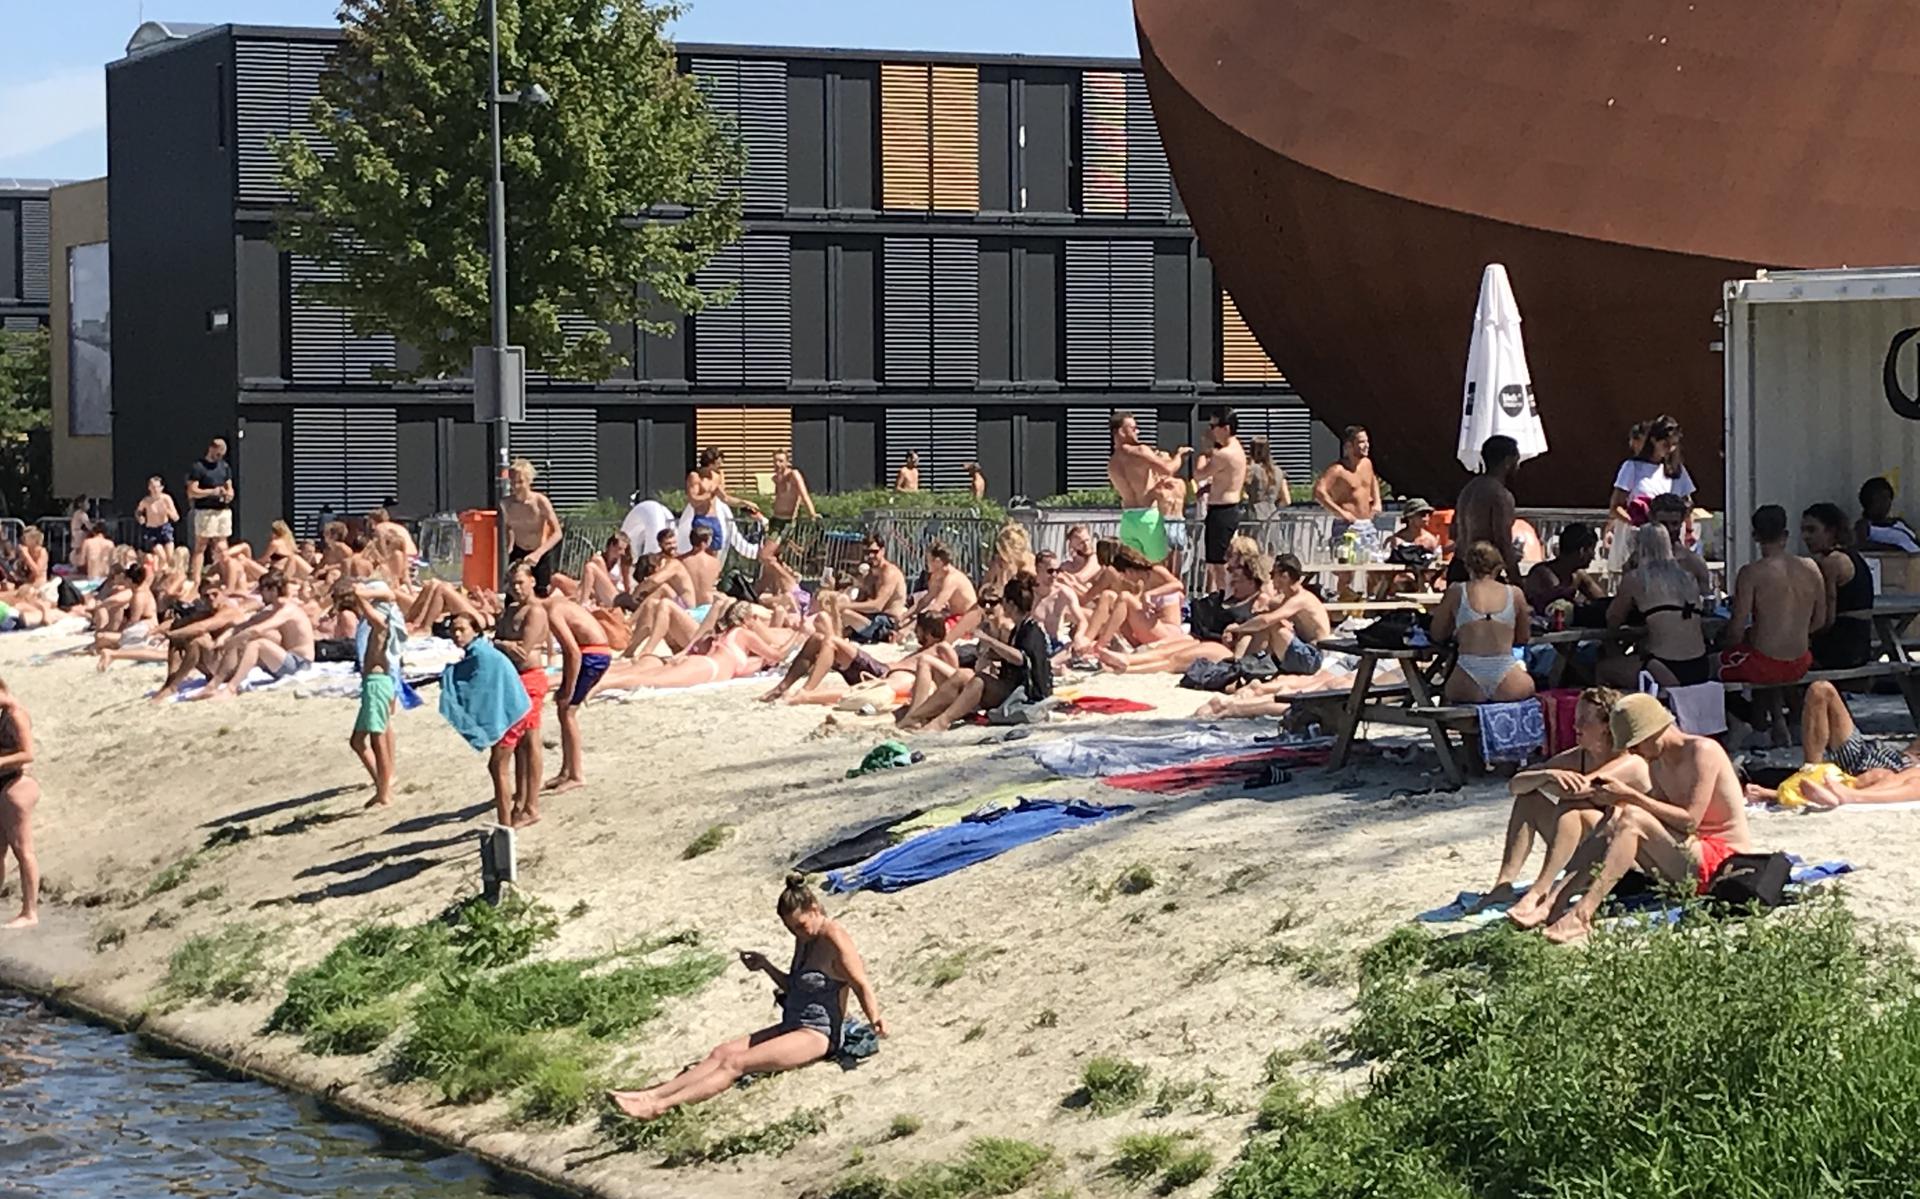 Voorzieningen zeven Impressionisme Groningen heeft meer schoon openbaar zwemwater nodig' - Dagblad van het  Noorden